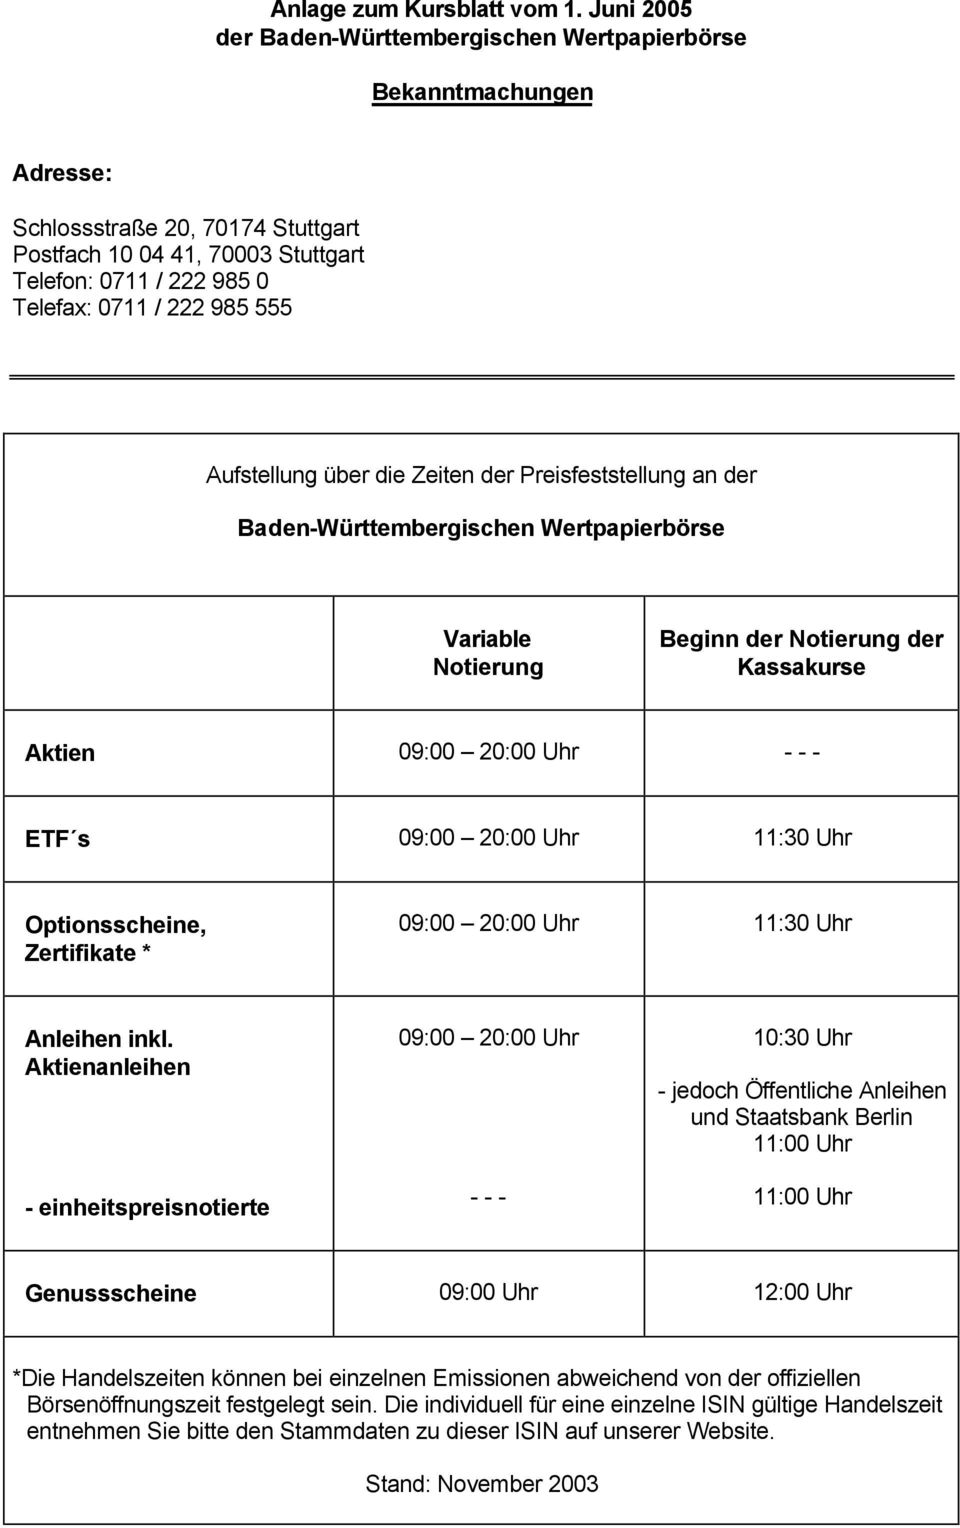 Aufstellung über die Zeiten Preisfeststellung an Baden-Württembergischen Wertpapierbörse Variable Notierung Beginn Notierung Kassakurse Aktien 09:00 20:00 Uhr - - - ETF s 09:00 20:00 Uhr 11:30 Uhr